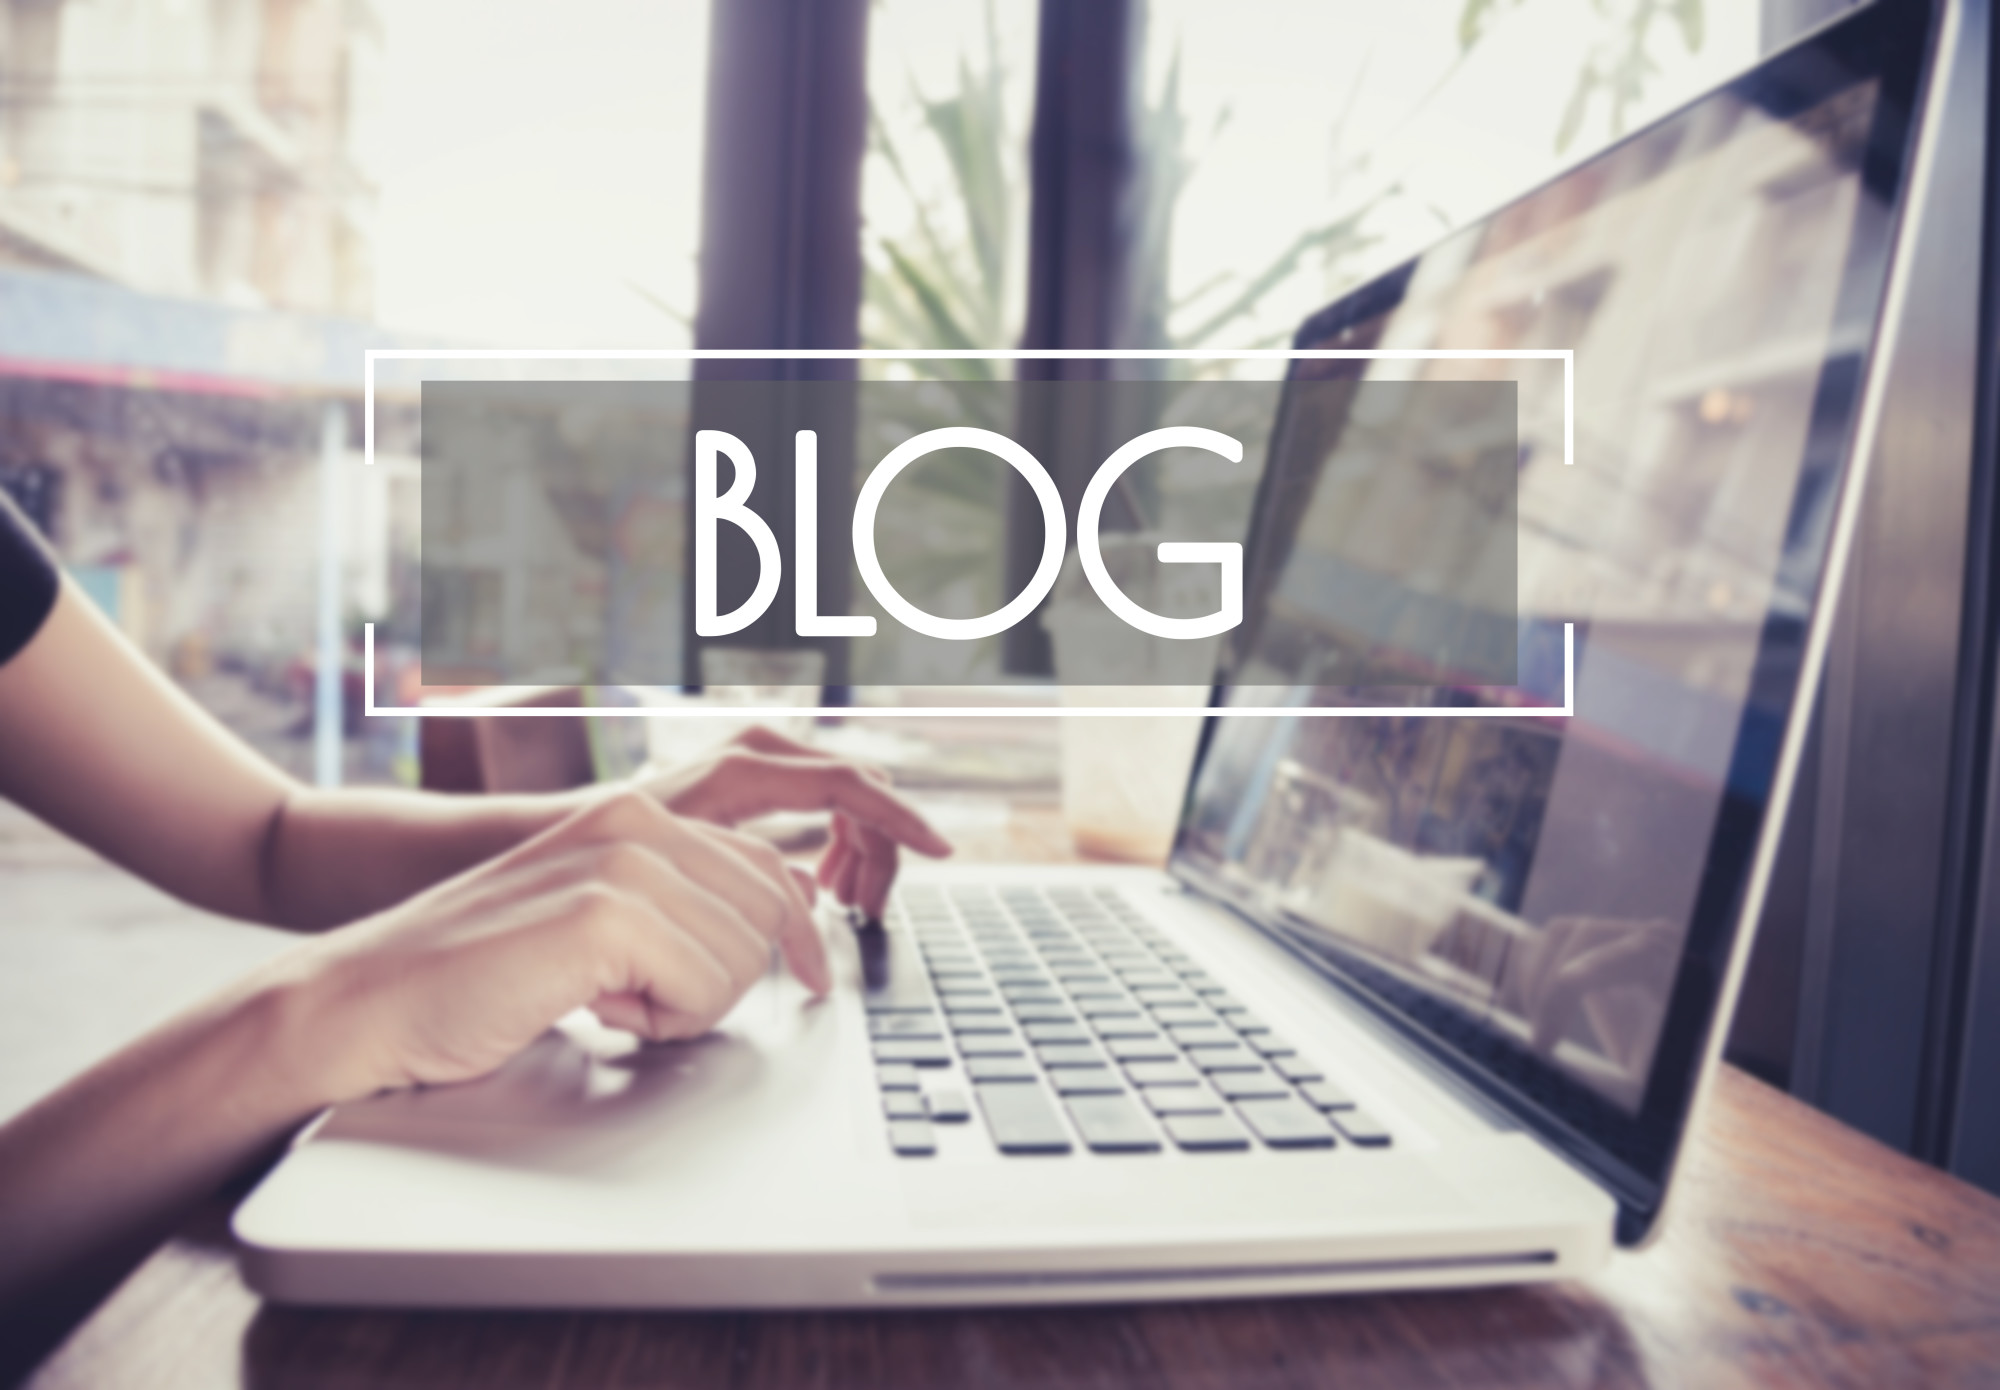 Making Blogging Simpler